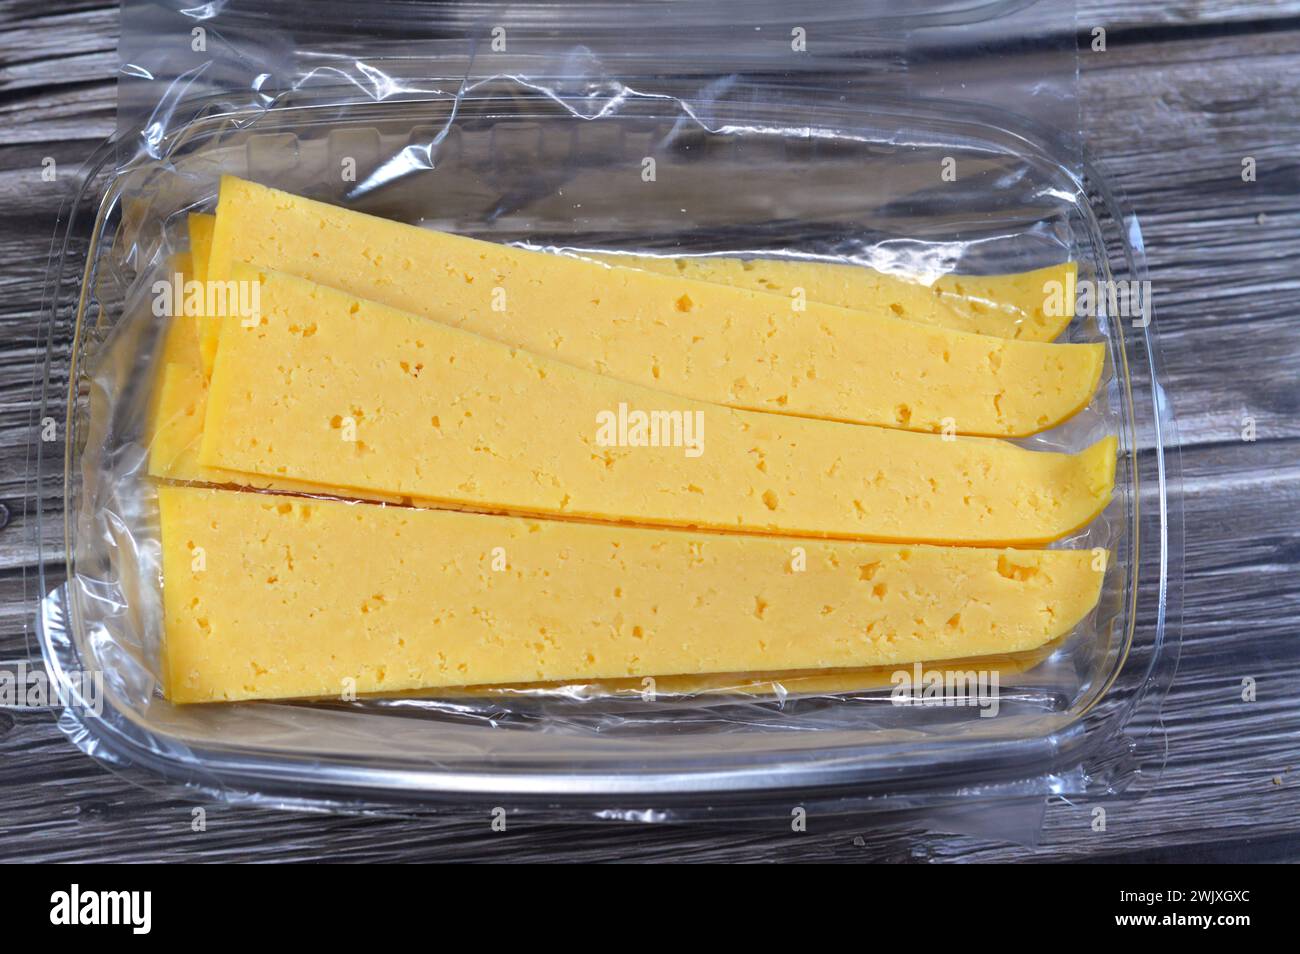 Les tranches de fromage Rumi égyptien, également appelé gebna romiya ou gebna turkiya, Roumi, Romi également Romy, fromage dur de parmesan du Moyen-Orient, a un pungent s. Banque D'Images